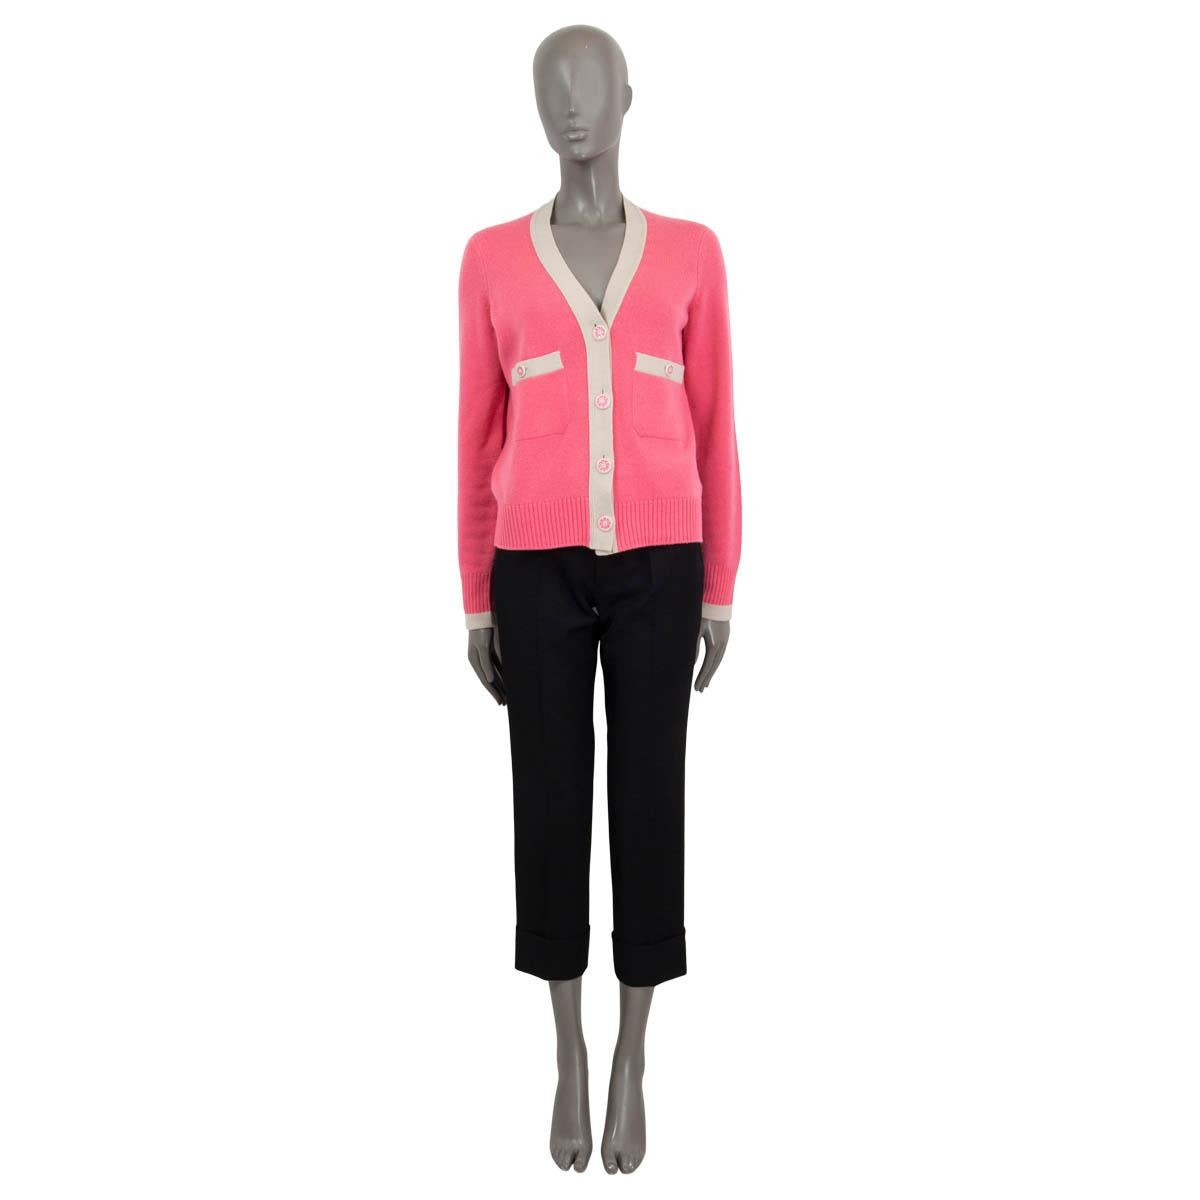 100% authentische Chanel Strickjacke aus rosa Kaschmir (100%) mit kontrastierendem sandfarbenem Saum. Mit zwei aufgesetzten Taschen auf der Vorderseite, rosa geblümten Knöpfen und einem Gürtel zum Binden auf der Rückseite. Wurde getragen und ist in